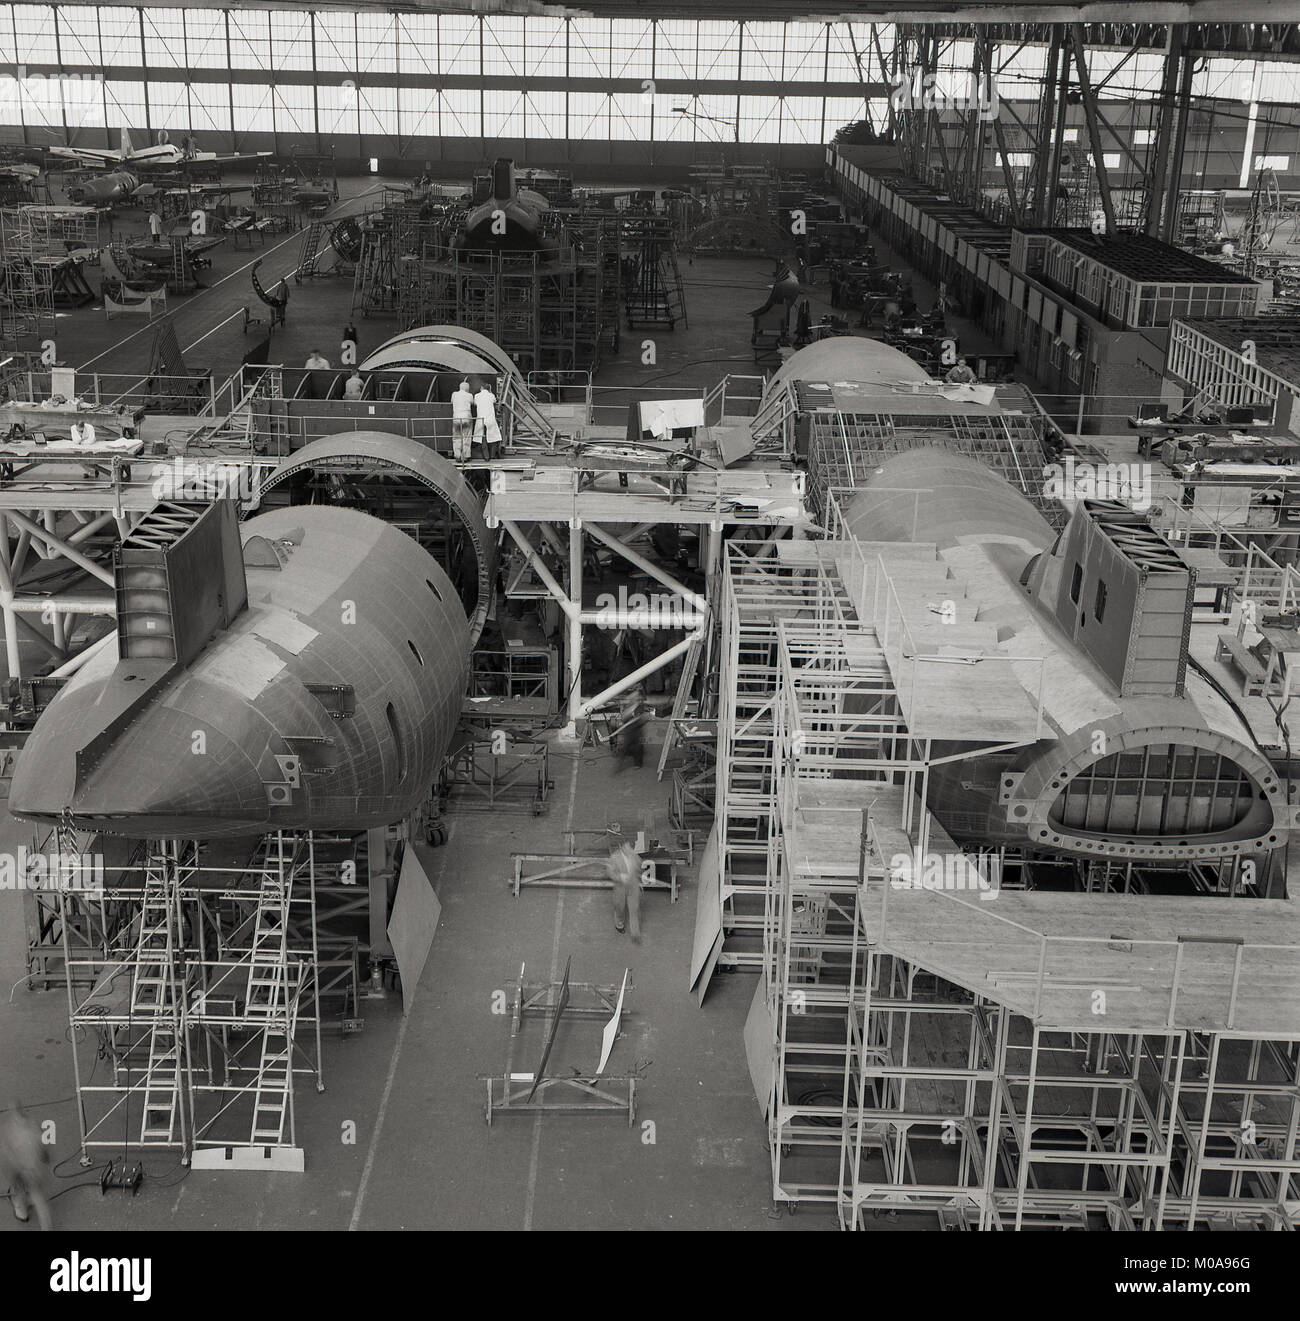 1950, historische, kommerzielle Flugzeuge gebaut wird in einem großen Werk für Luft- und Raumfahrt oder Hangar in der Nähe von London, England, UK montiert oder. Stockfoto